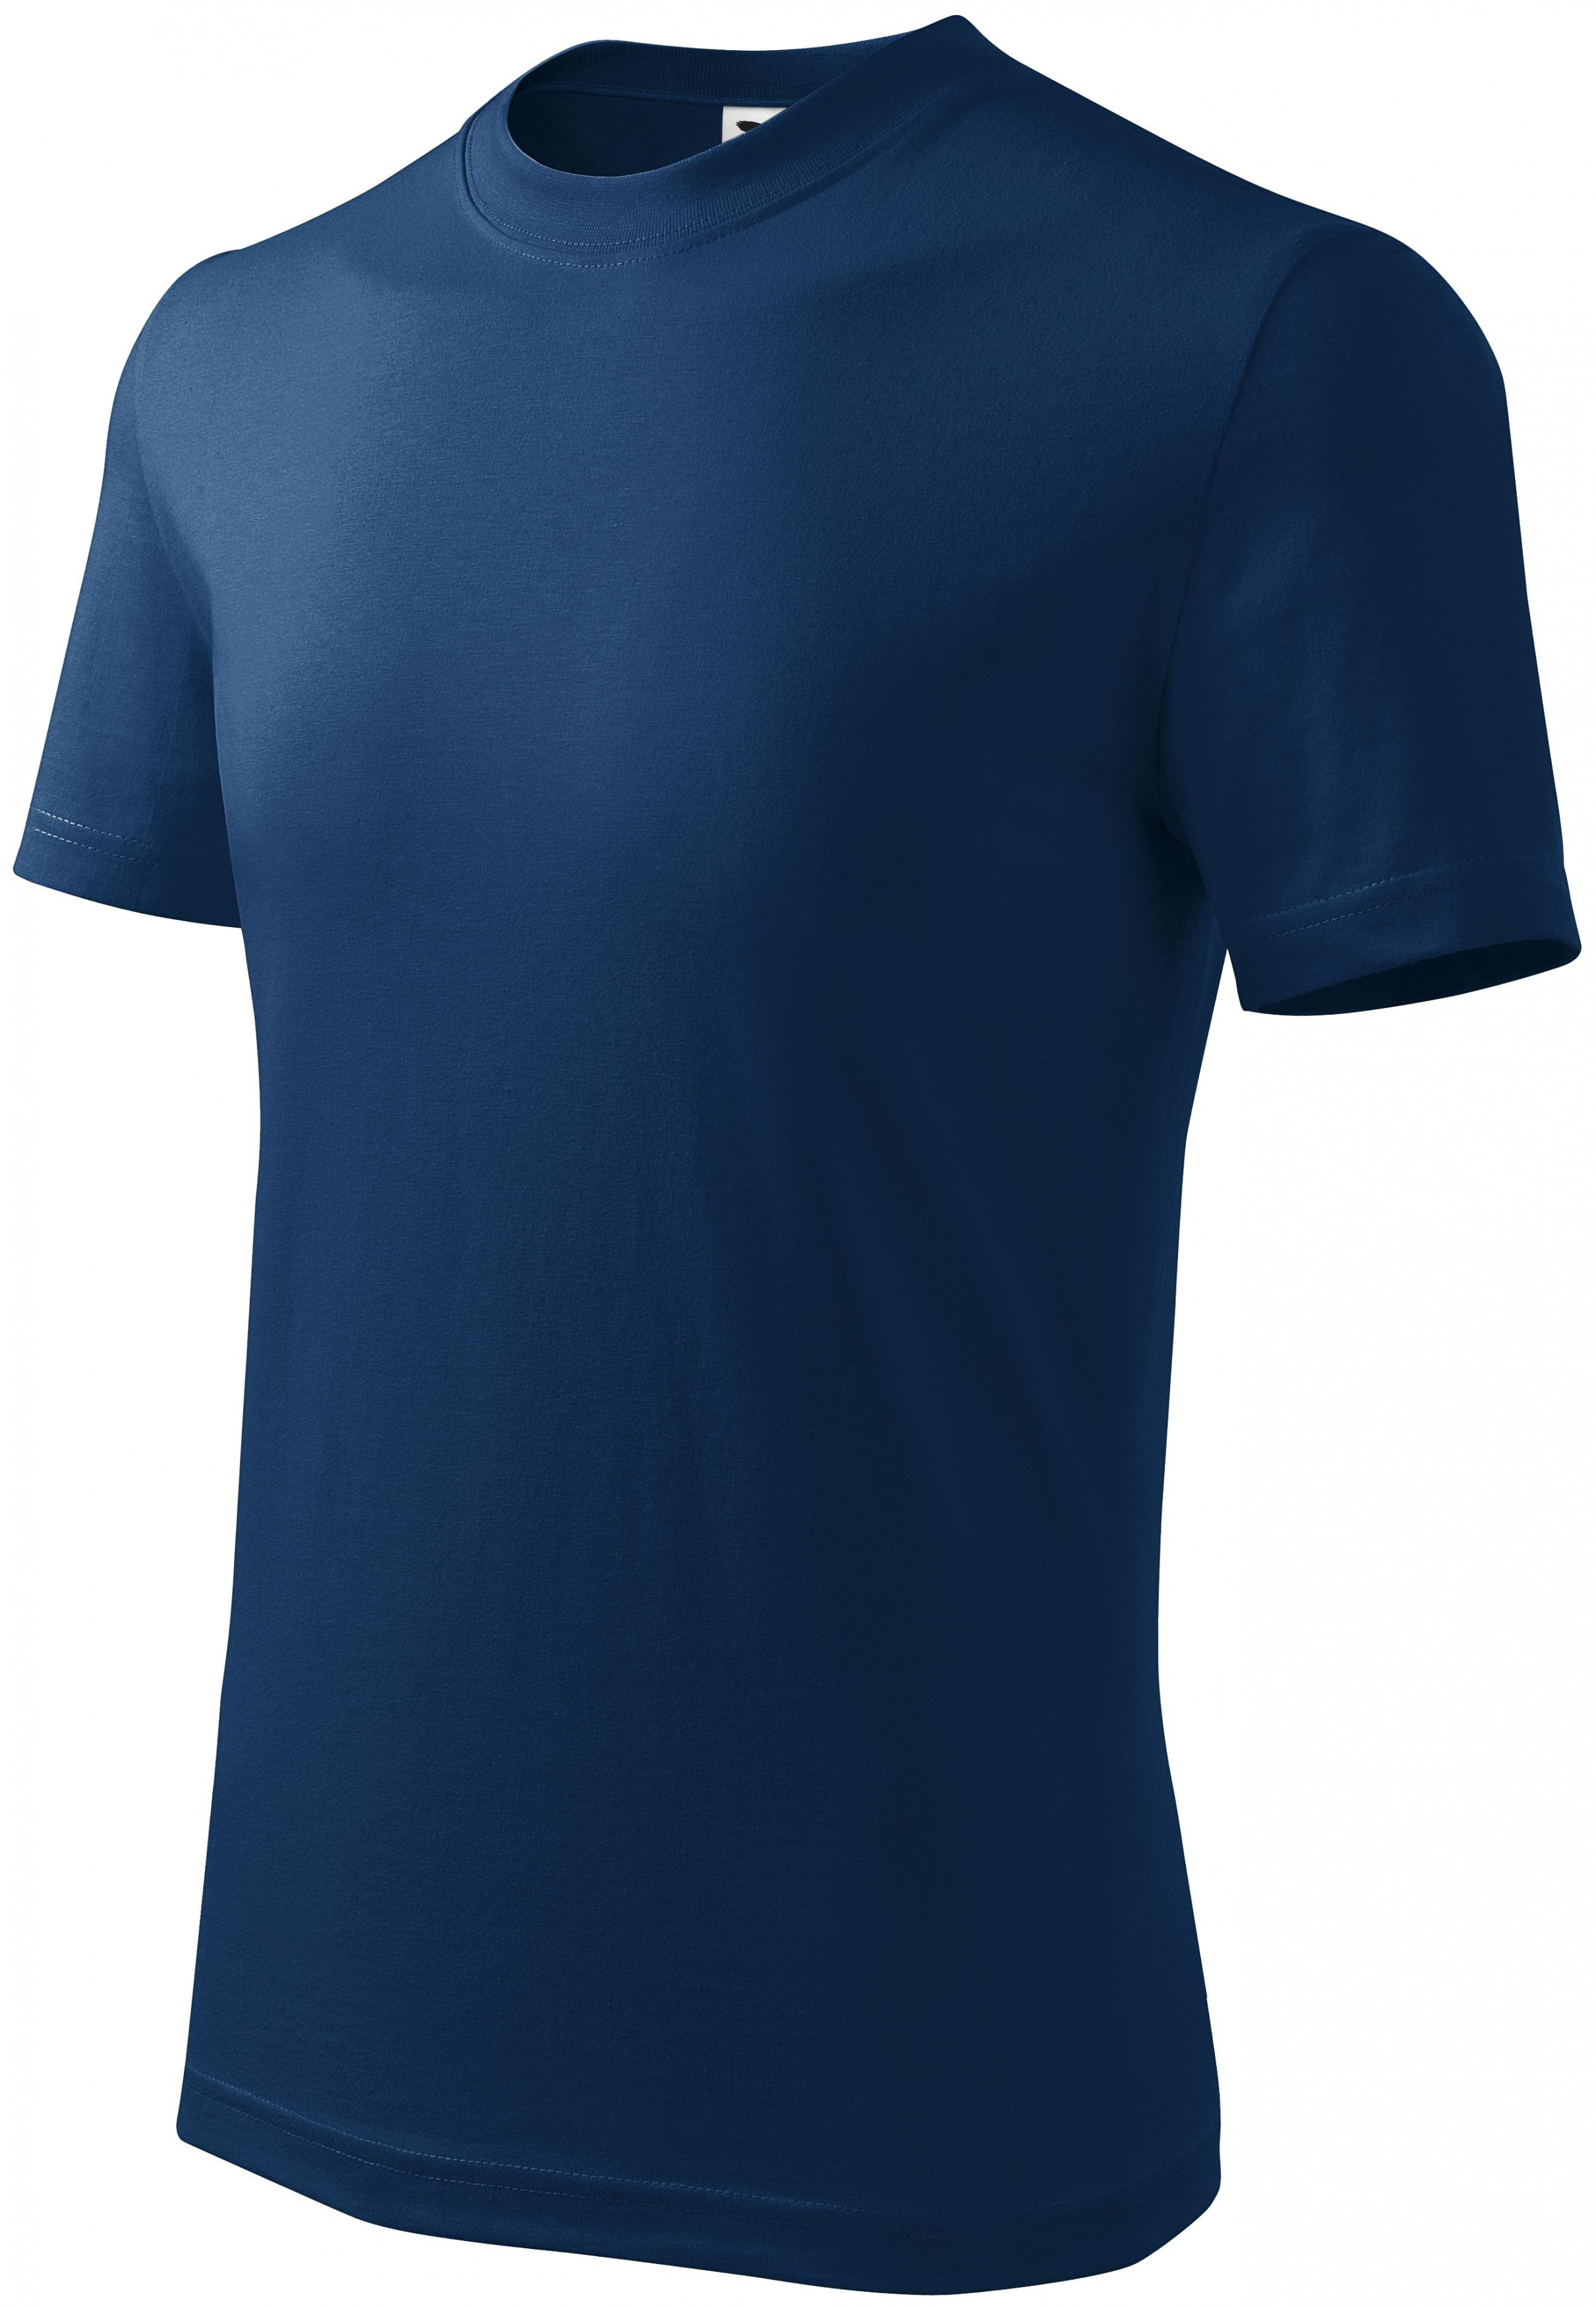 Detské tričko jednoduché, polnočná modrá, 122cm / 6rokov